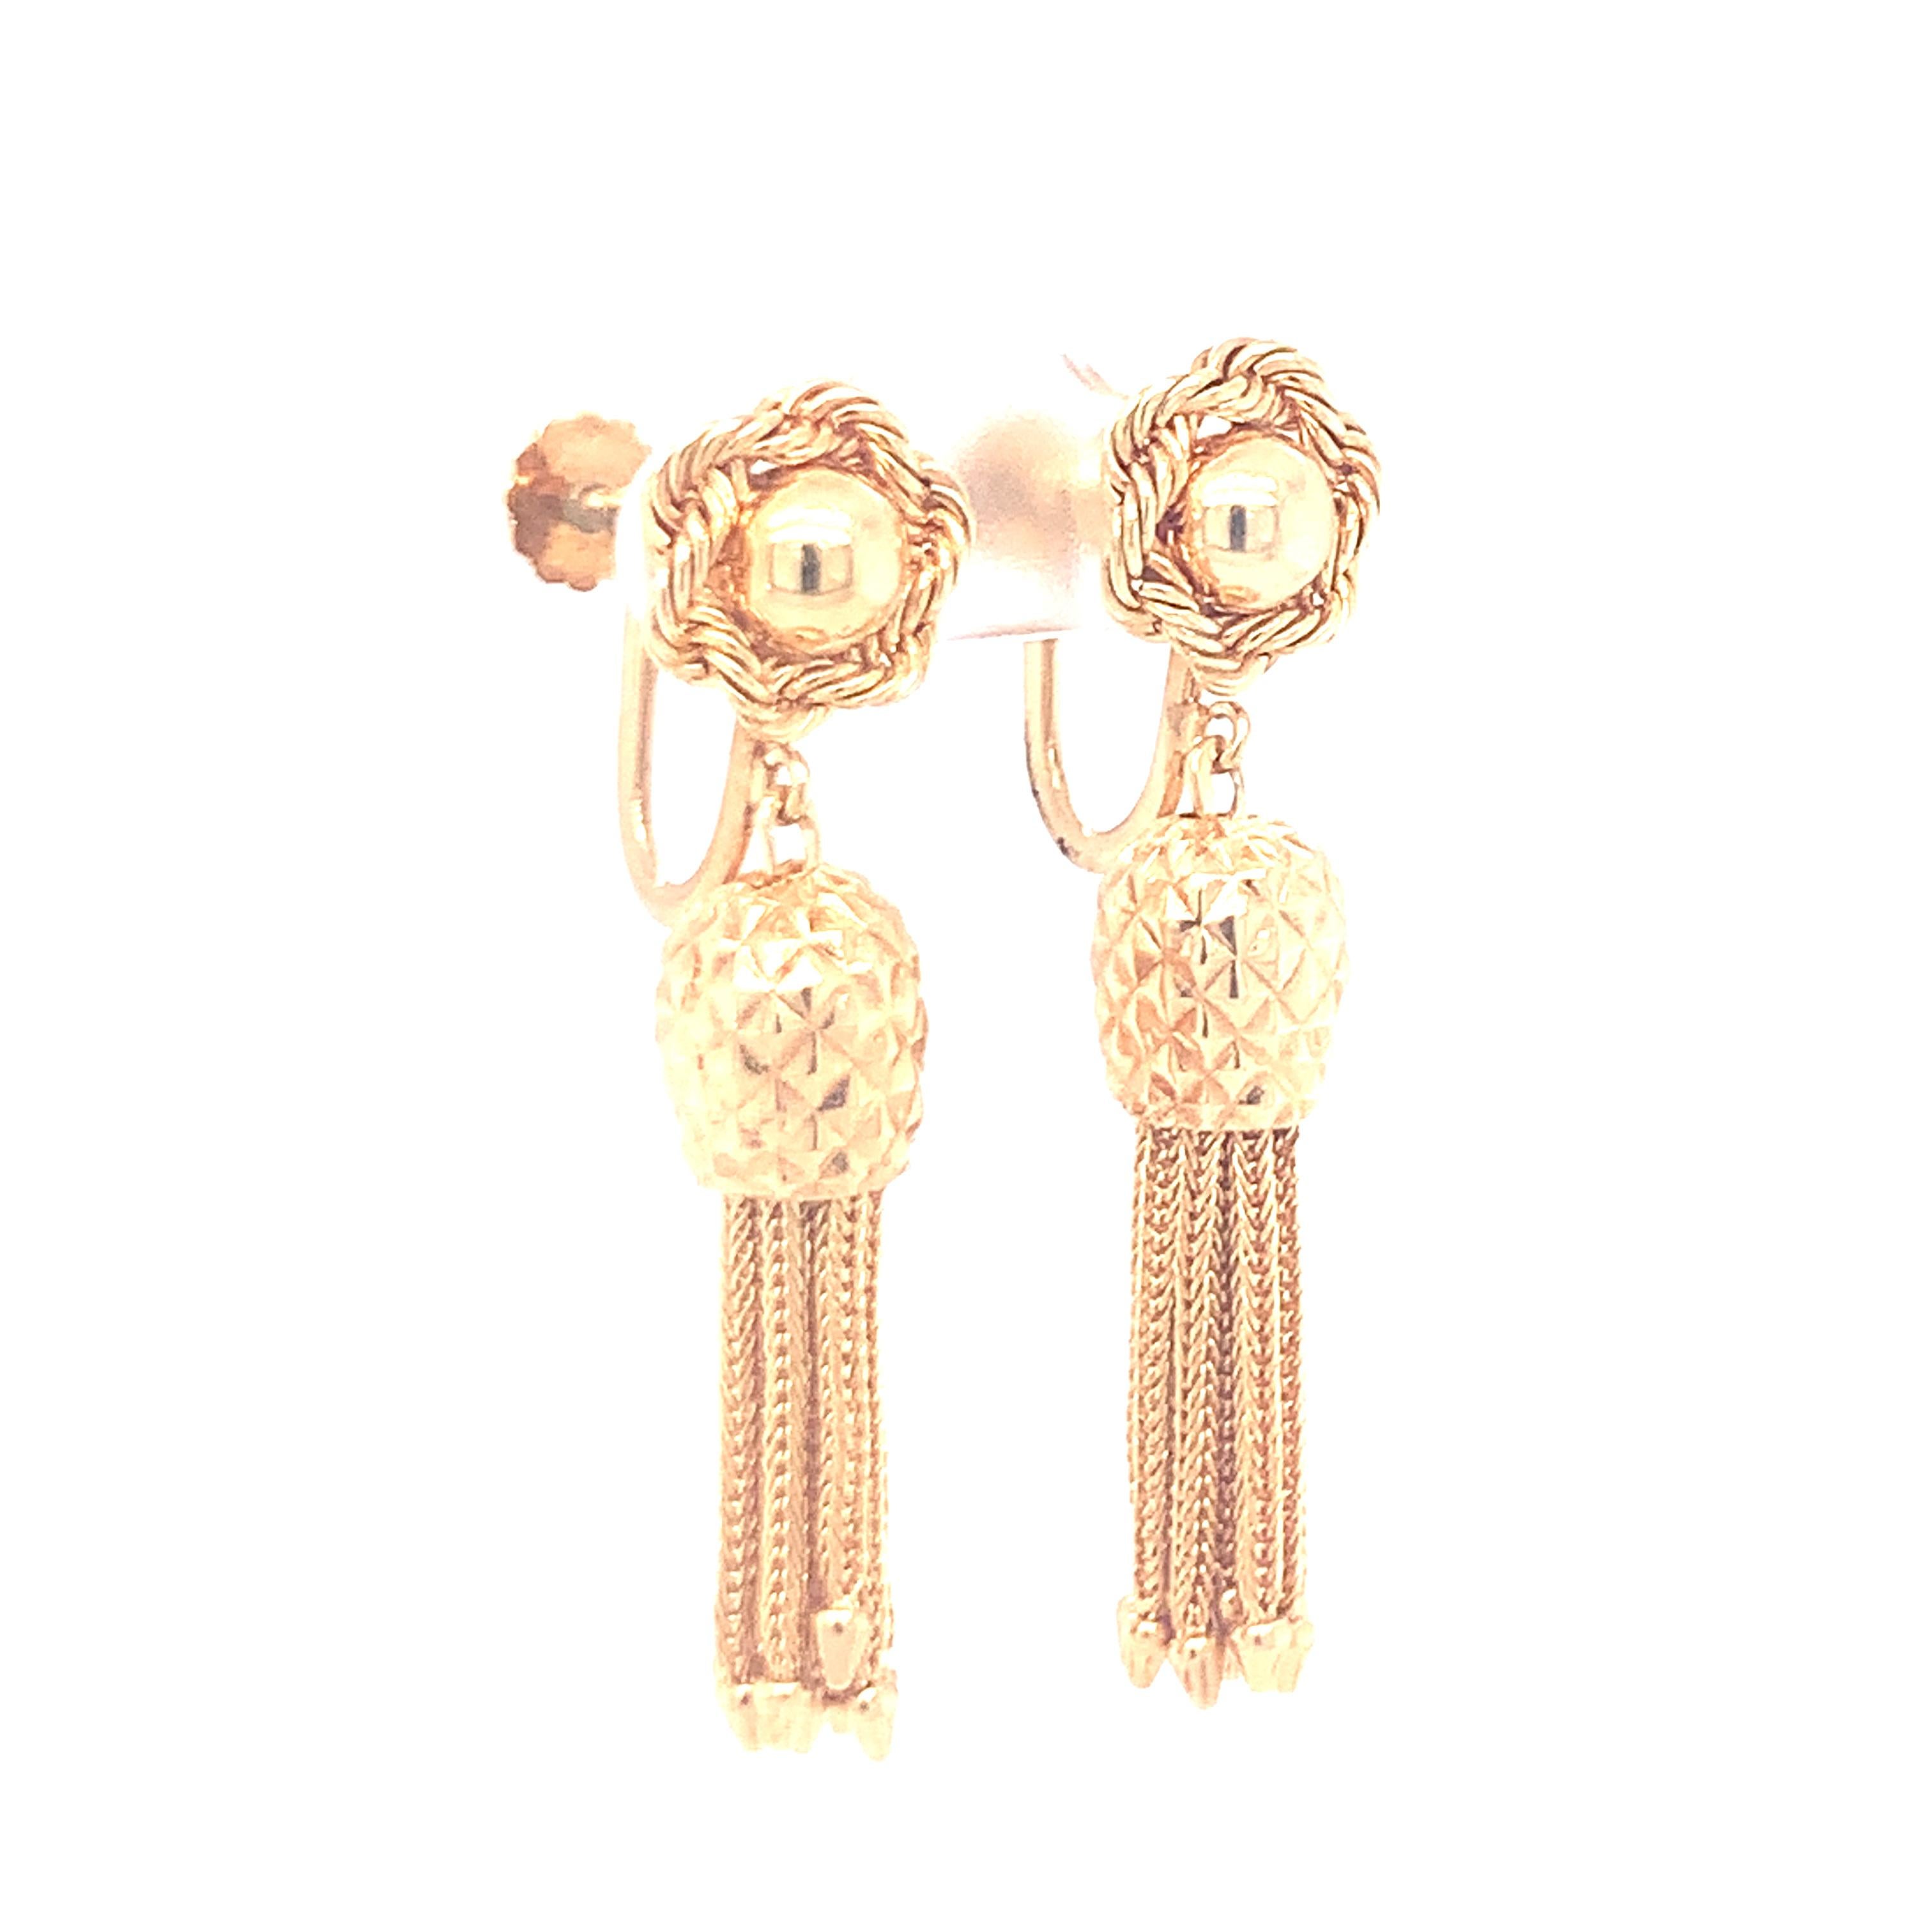 Une paire de boucles d'oreilles pendantes en or jaune 14 carats avec un design de corde torsadée et des pointes pendantes mesurant 2 pouces de long. Vers les années 60.

Adorable, ludique, accrocheur.

Métal : or jaune 14K
Circa :